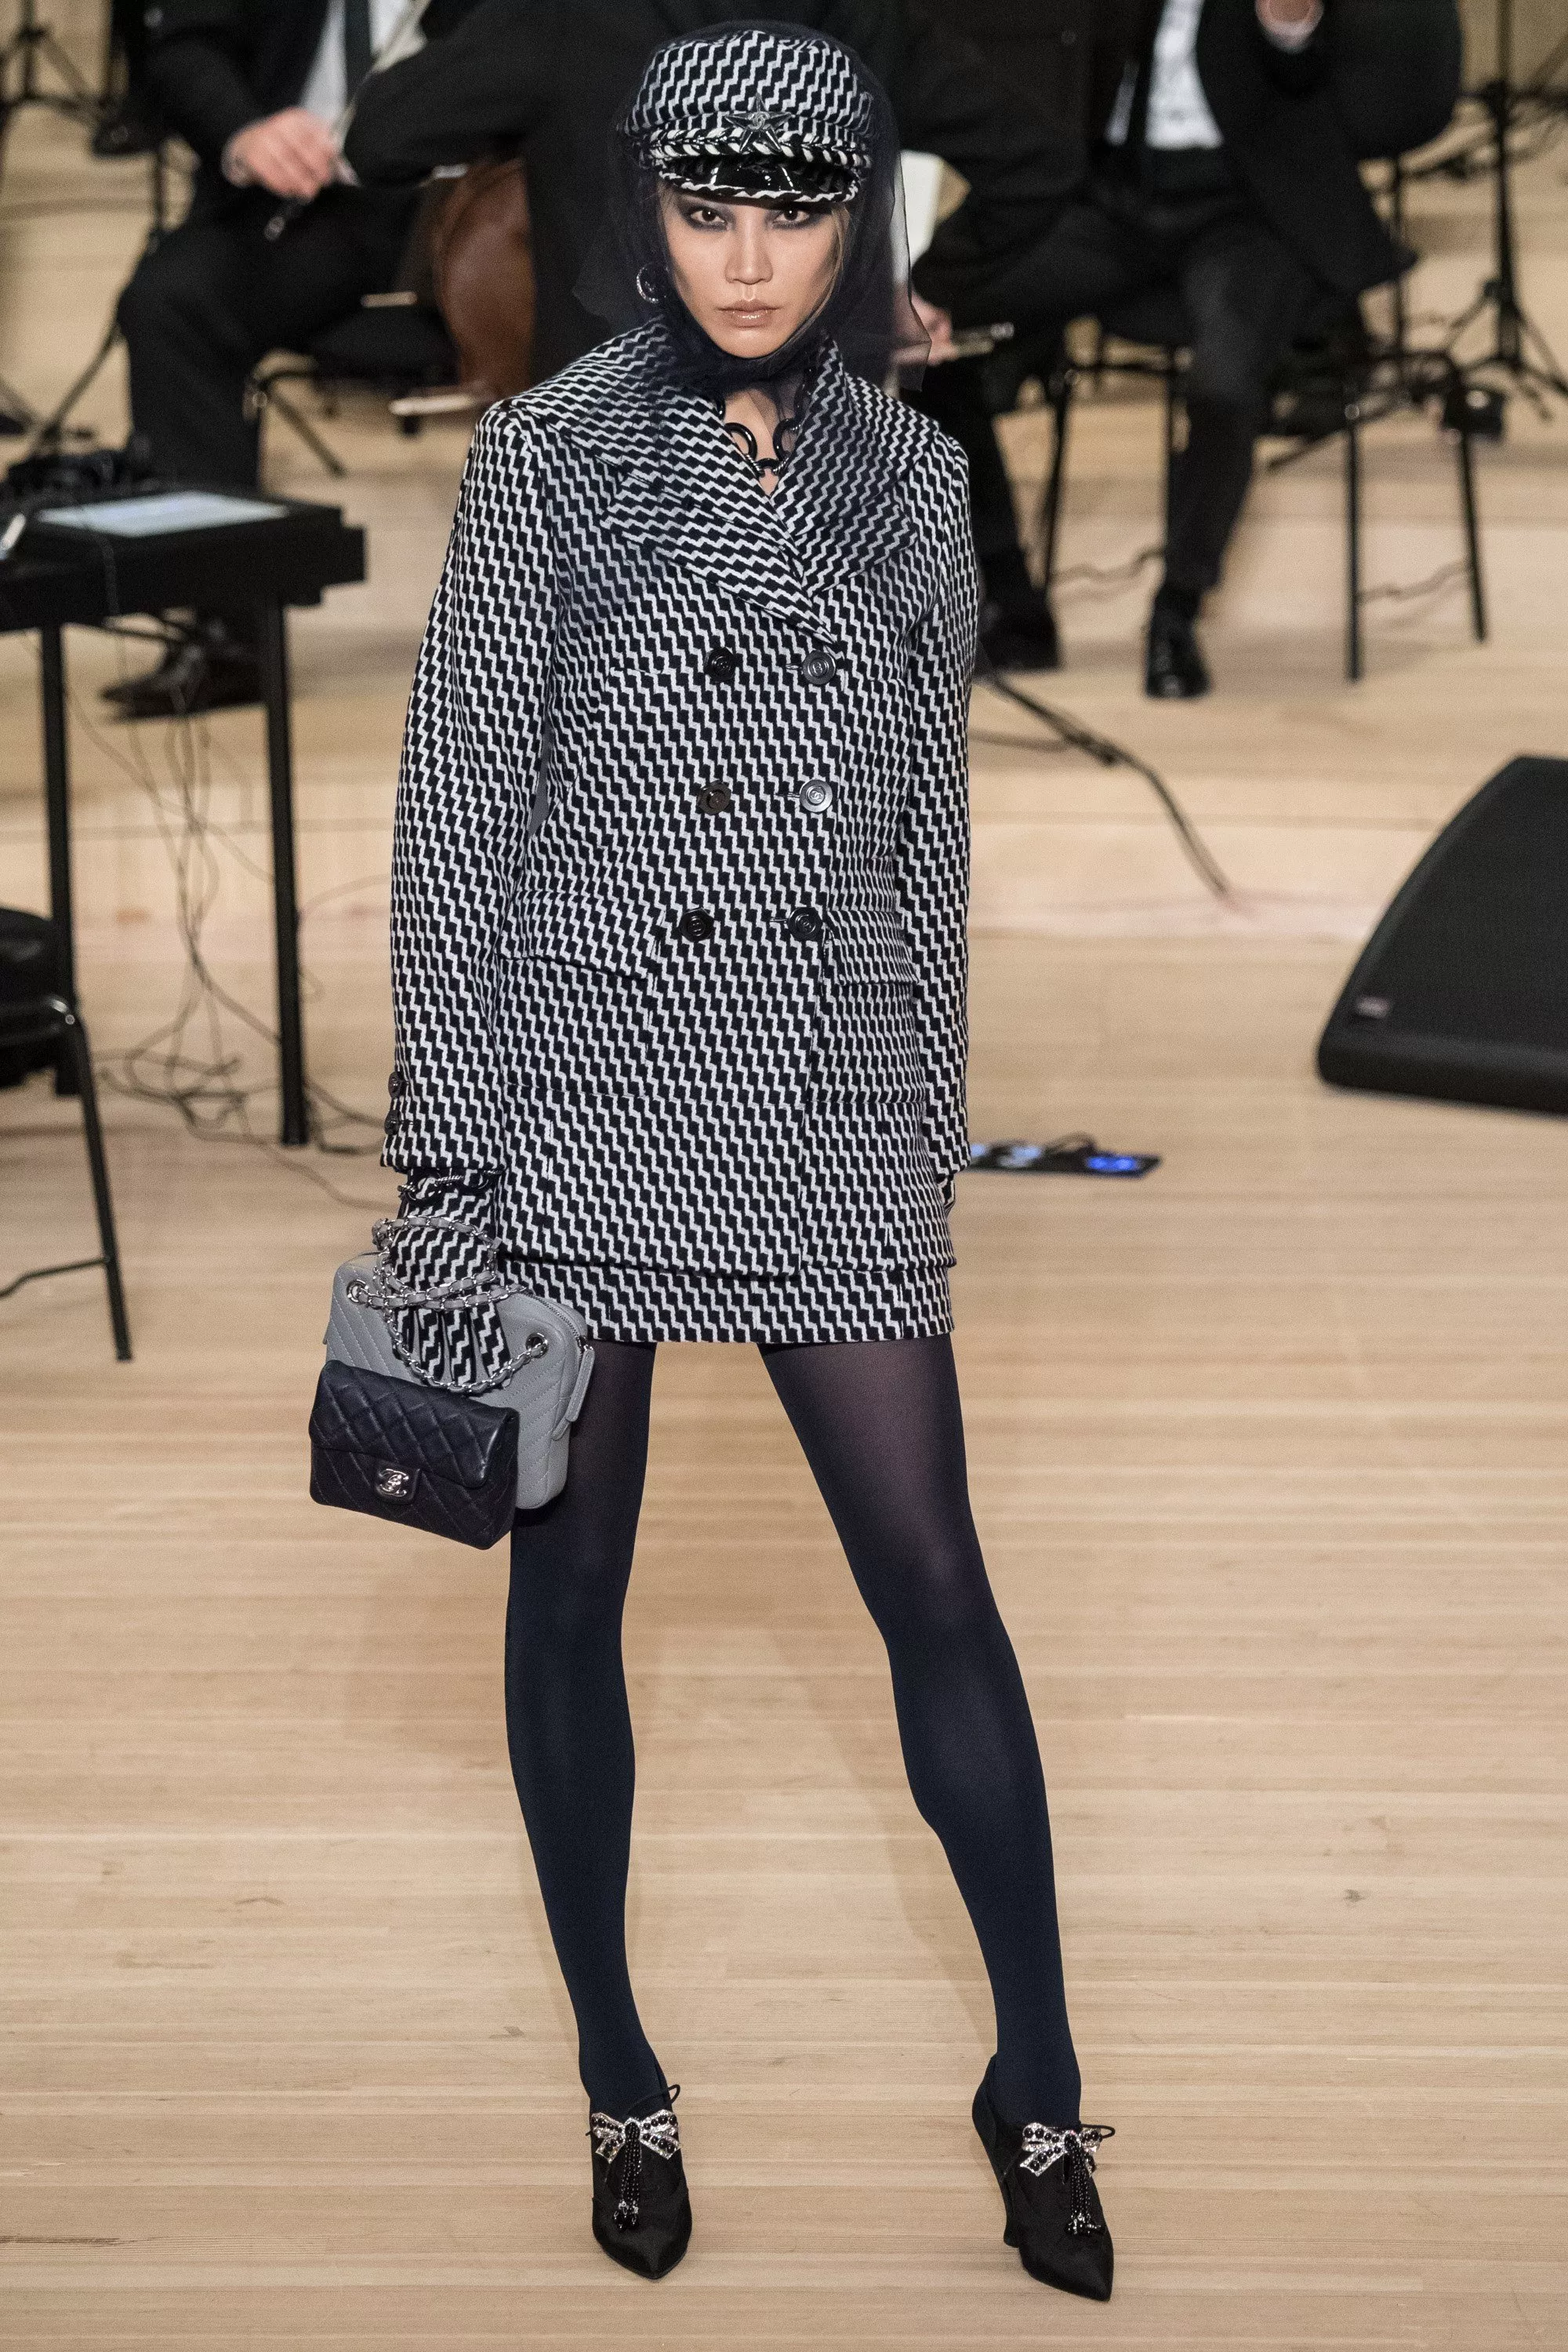 مجموعة Chanel Métiers d’Art التحضيريّة لخريف 2018: عودة إلى جذور Karl Lagerfeld الألمانيّة